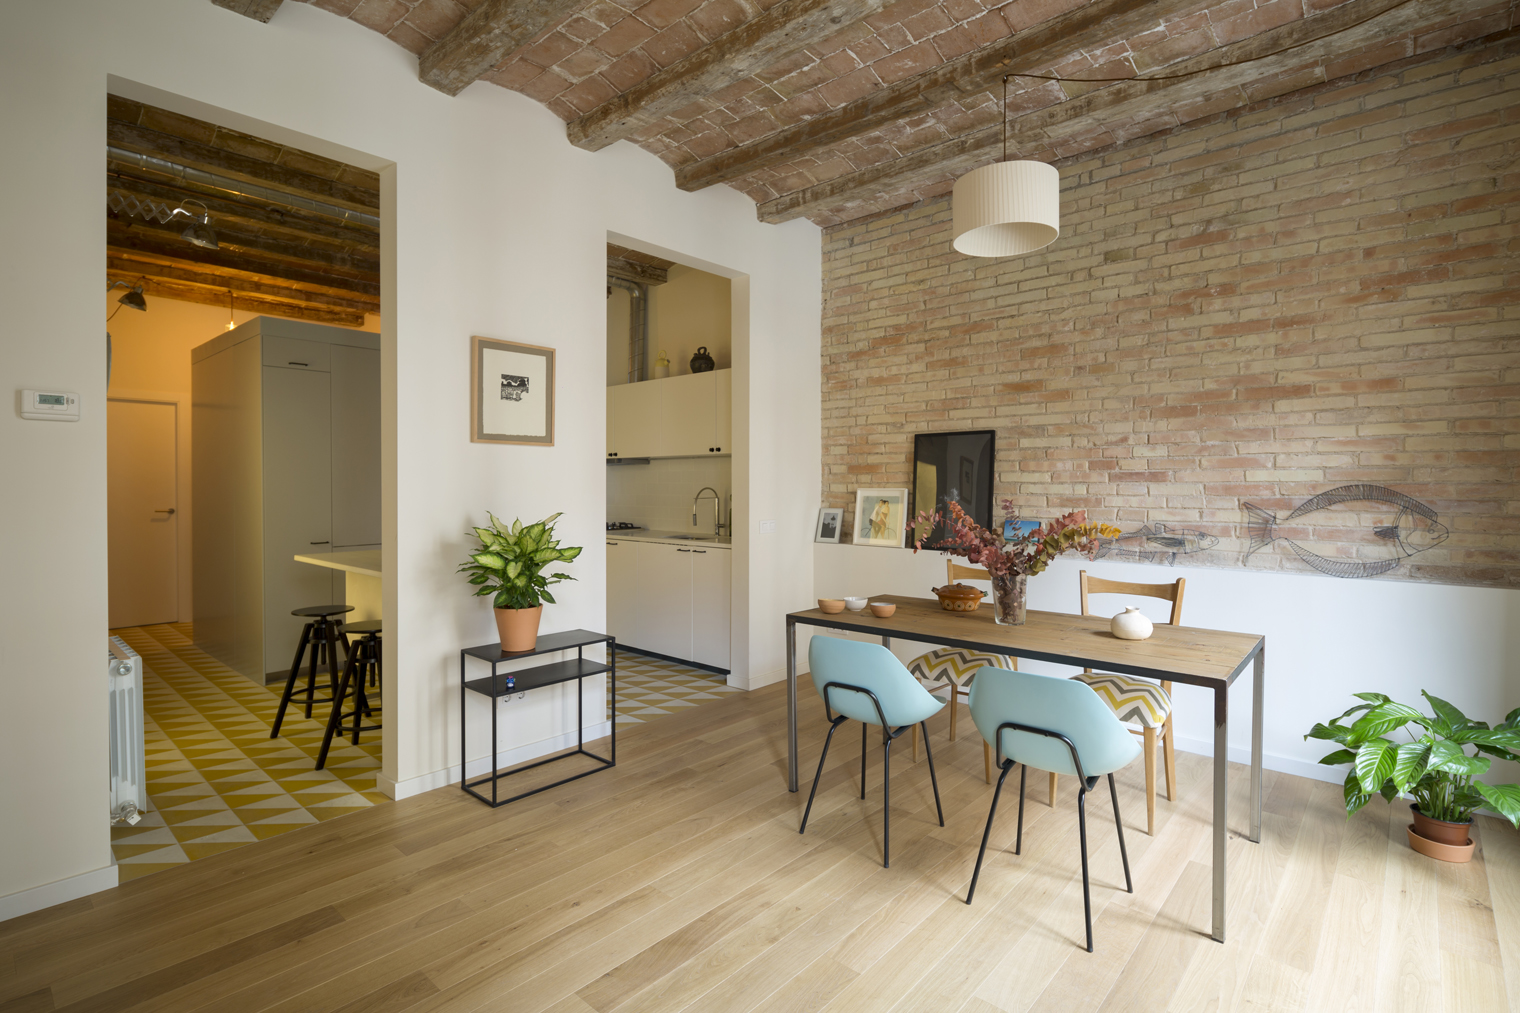 Nook architects saca partido al chafl n de barcelona for Foto di case antiche